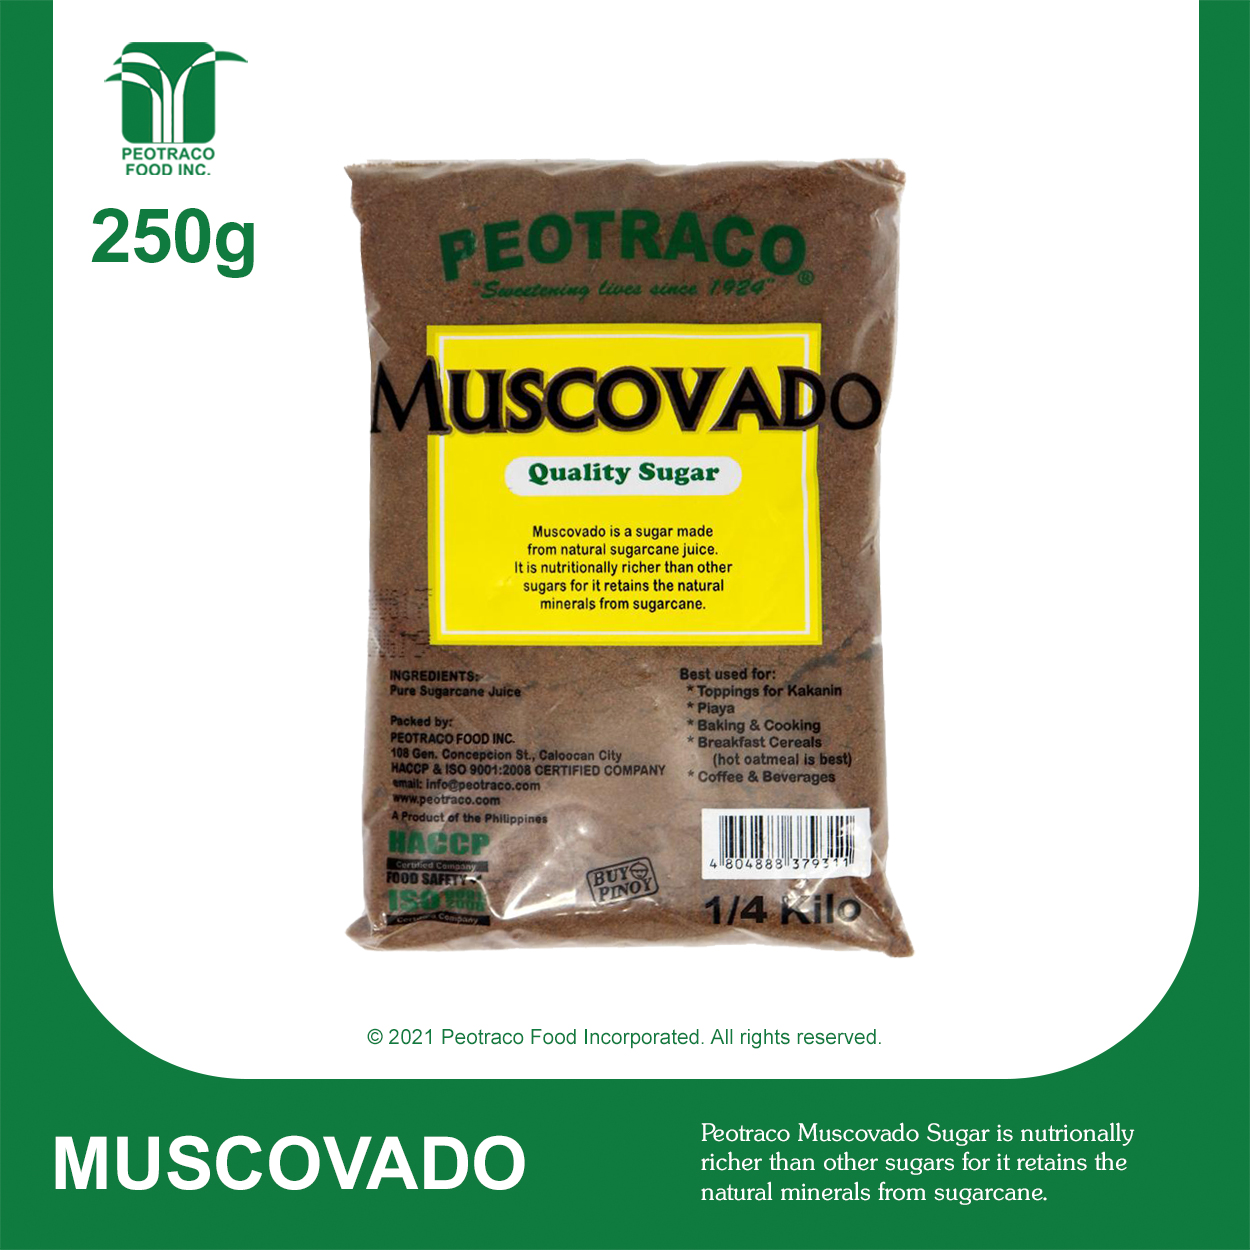 Muscovado Sugar - Peotraco Food Inc.